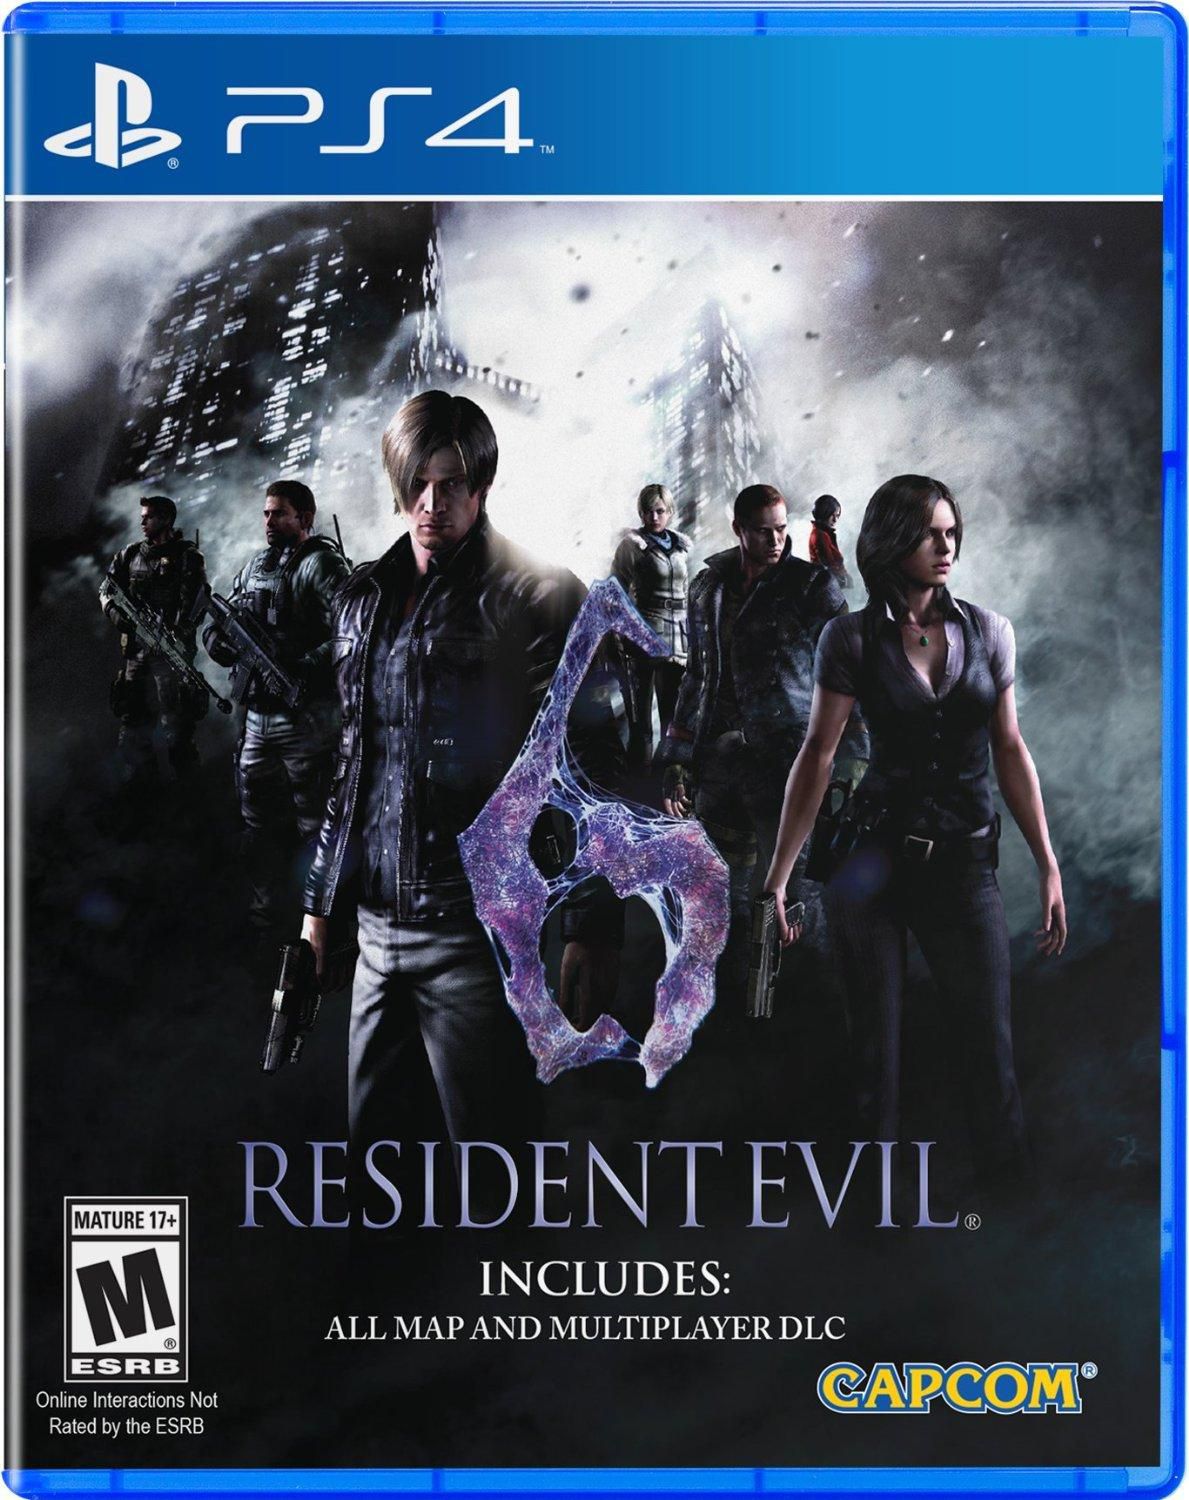 Capcom Resident Evil 6 for PS4